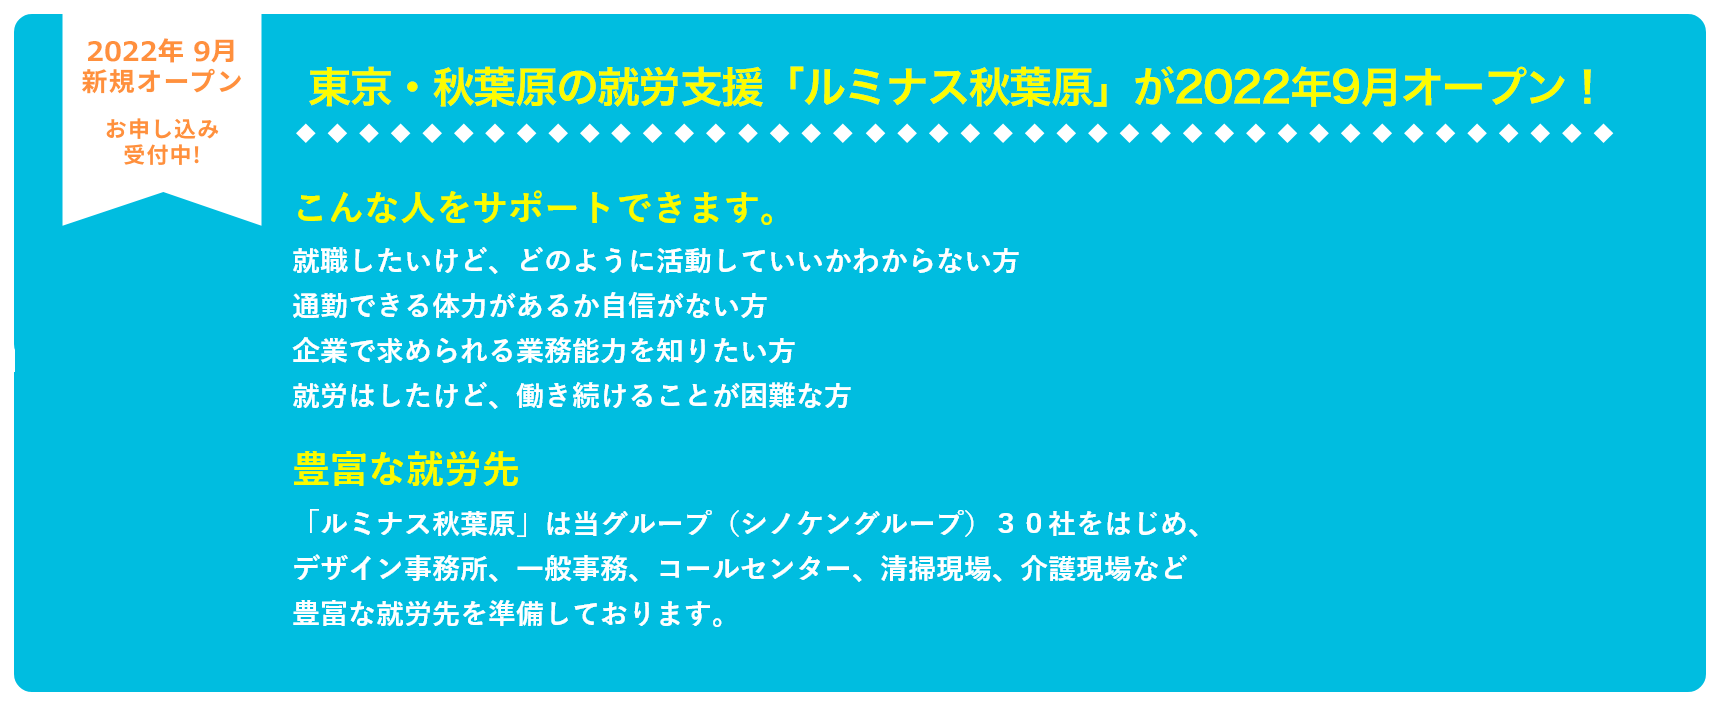 東京・秋葉原の就労支援「ルミナス秋葉原」が今夏・オープン